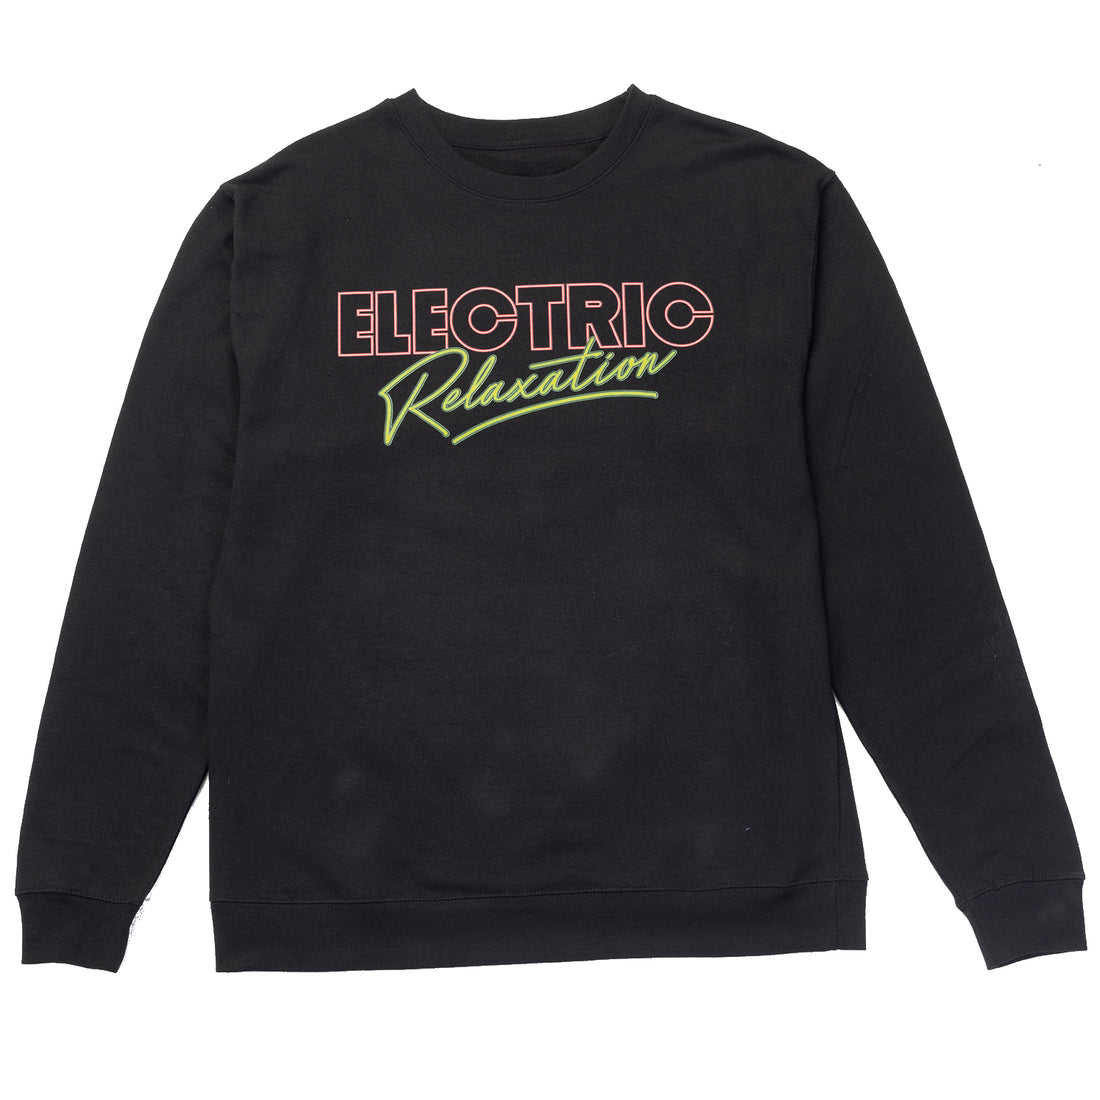 Electric Relaxation Crewneck Sweatshirt